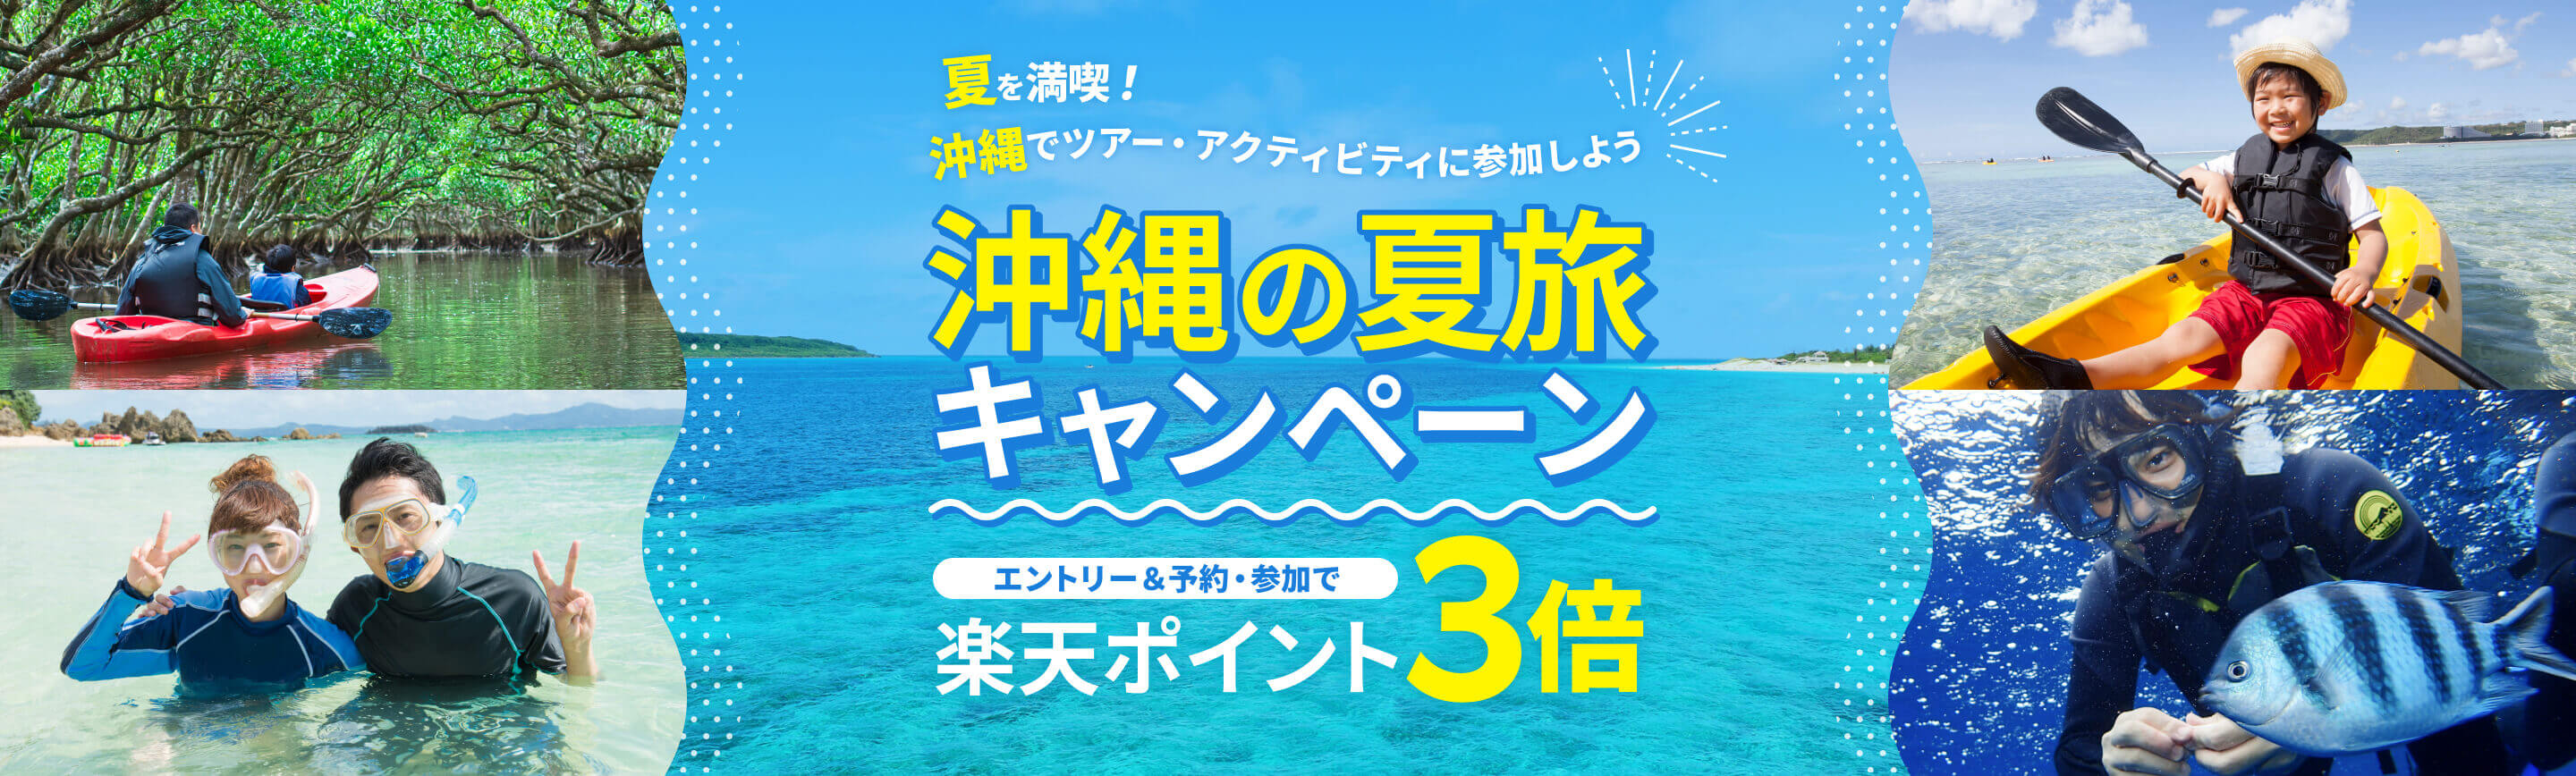 夏を満喫！沖縄でツアー・アクティビティに参加しよう。沖縄の夏旅キャンペーン。エントリー＆予約・参加で楽天ポイント3倍